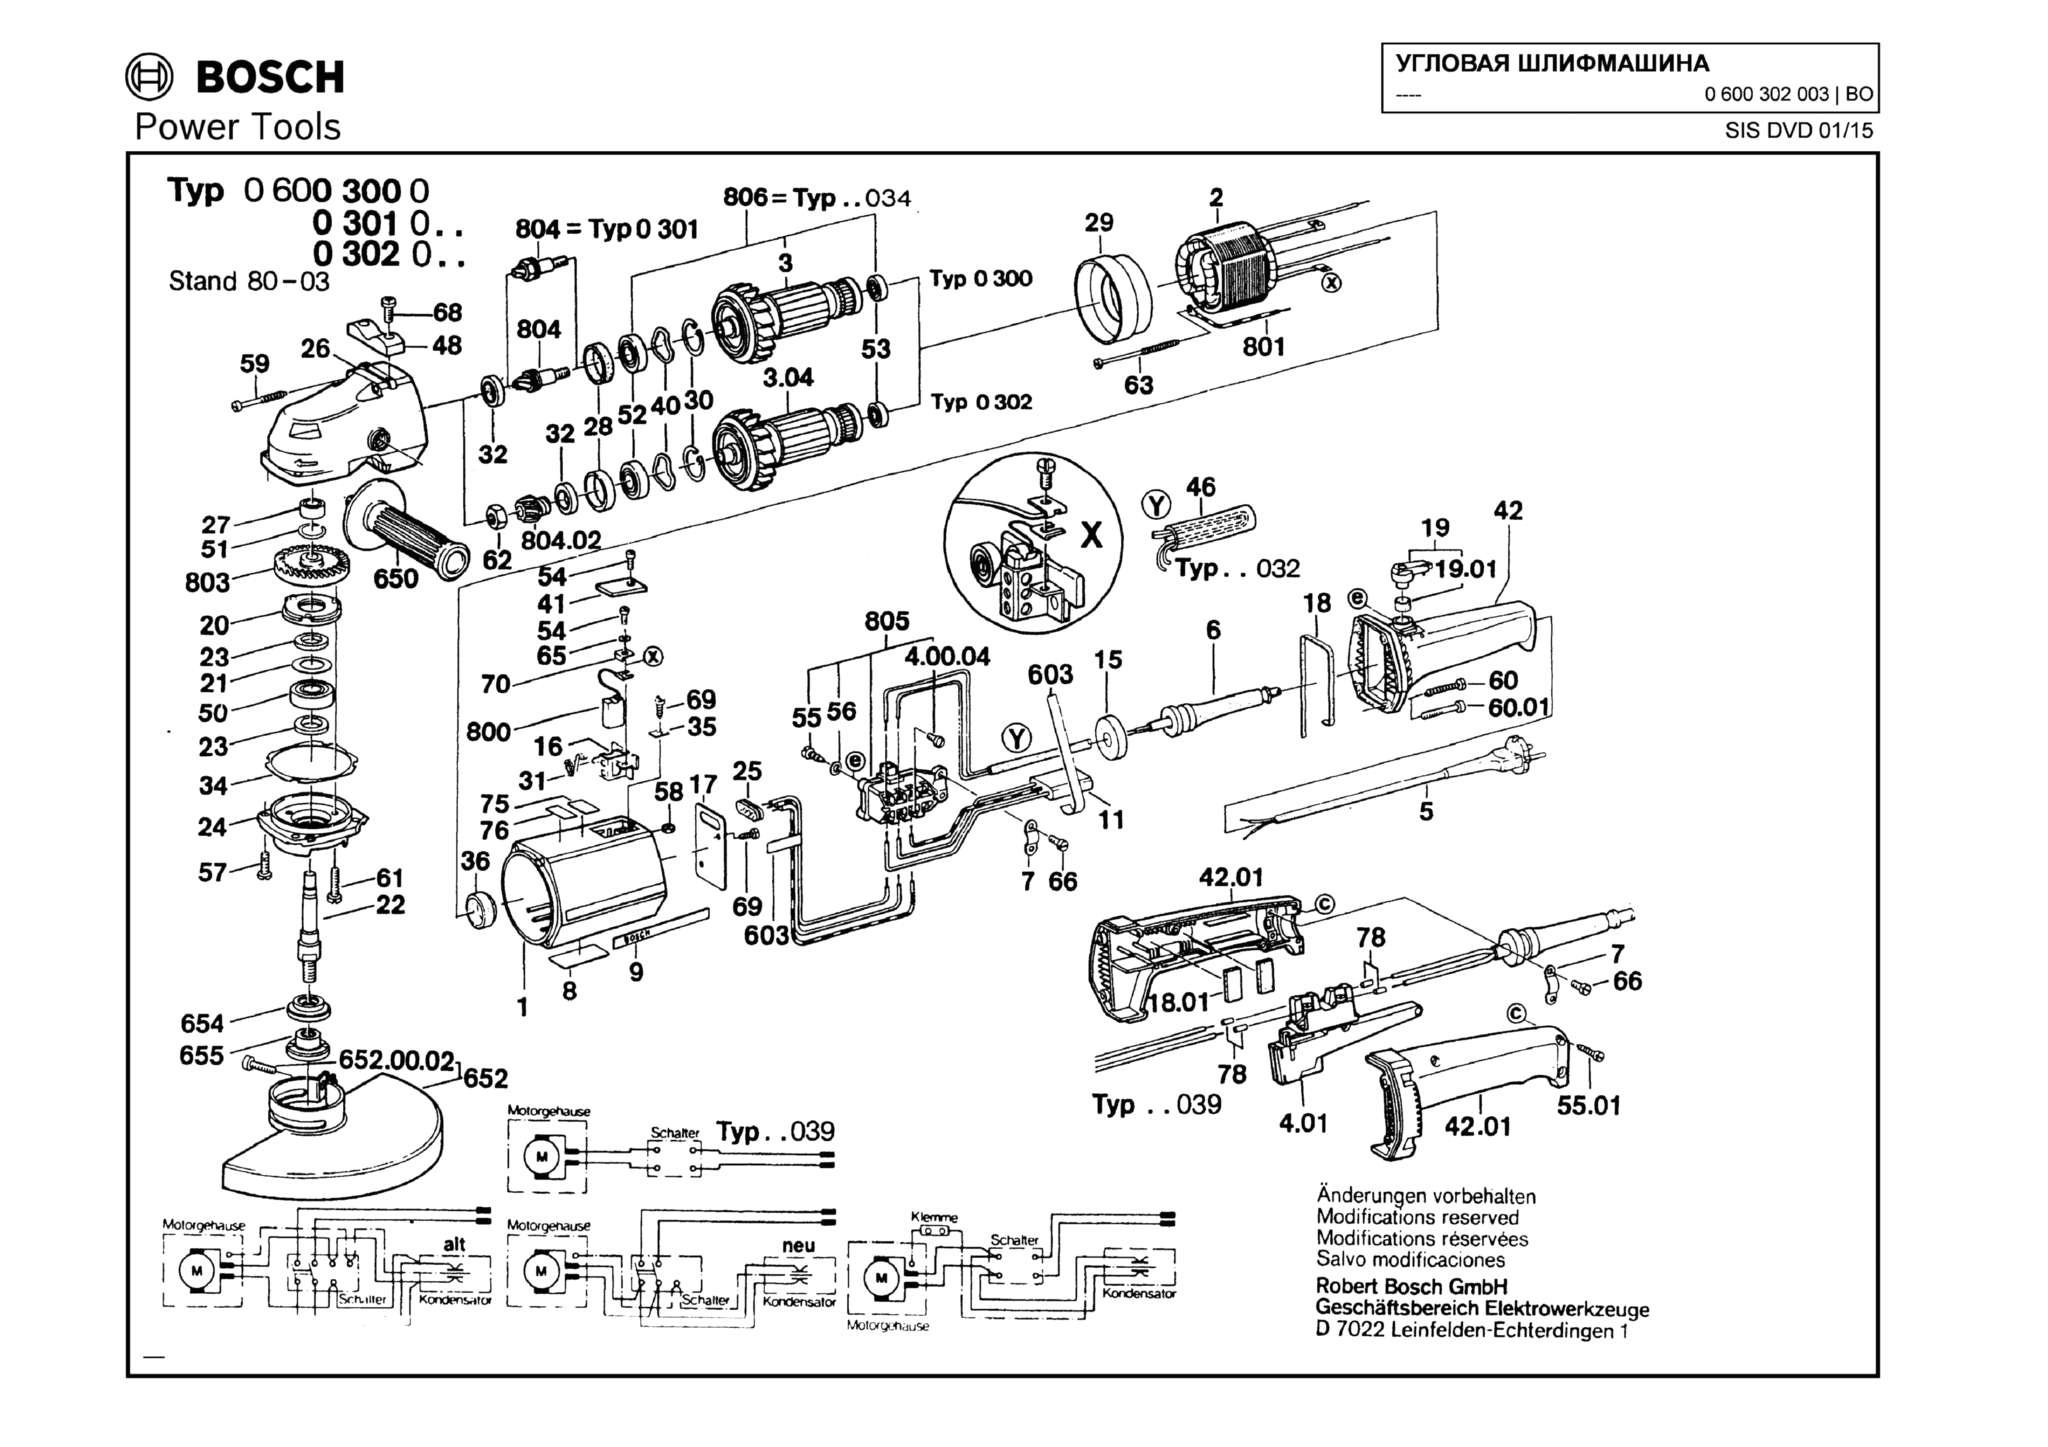 Запчасти, схема и деталировка Bosch (ТИП 0600302003)